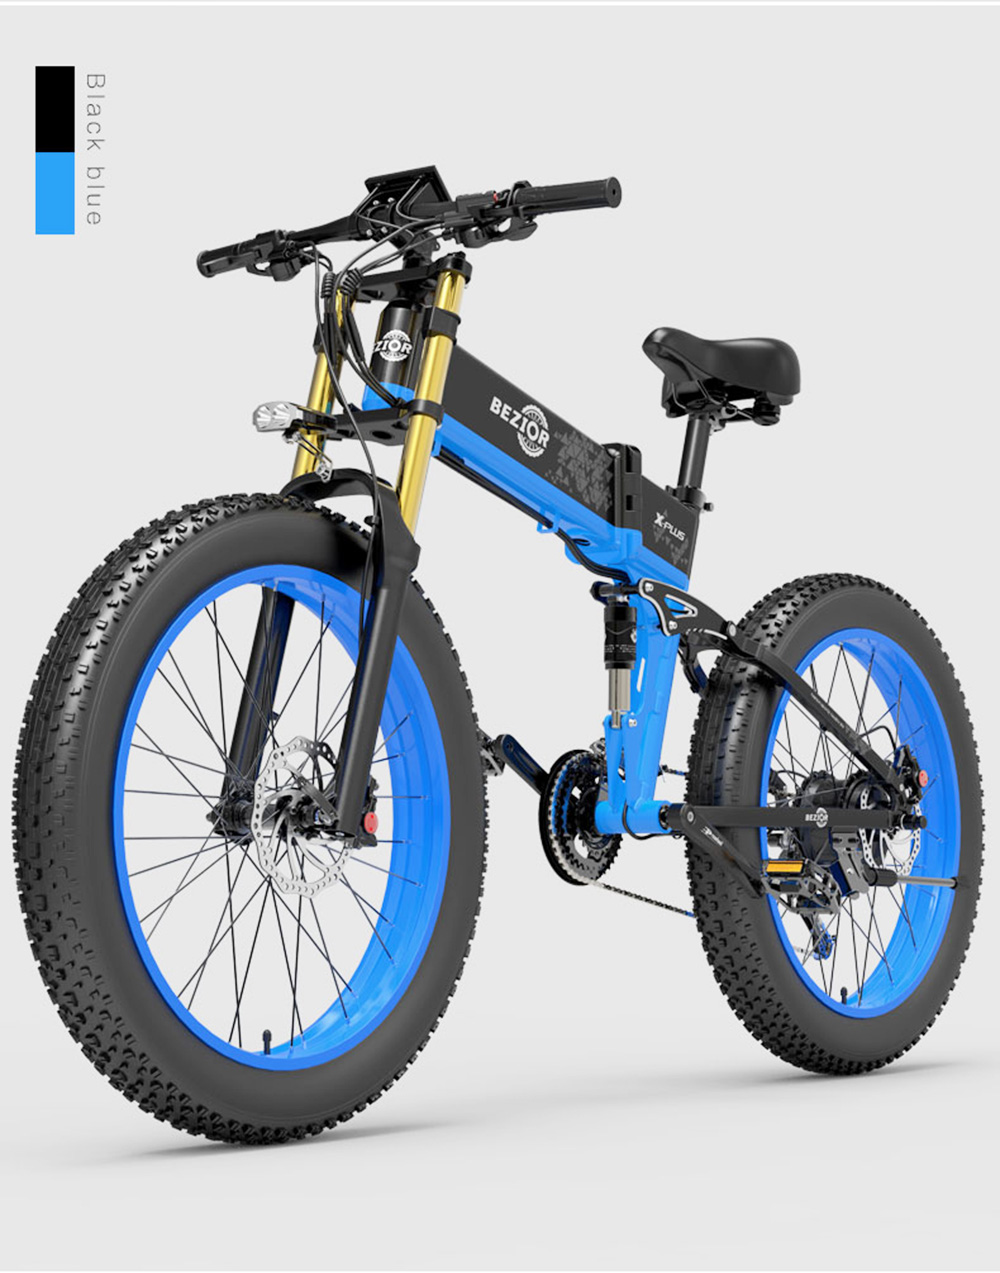 BEZIOR X-PLUS elektromos kerékpár 26 hüvelykes 1500 W 40 KM/H 48 V 17,5 Ah akkumulátor kék